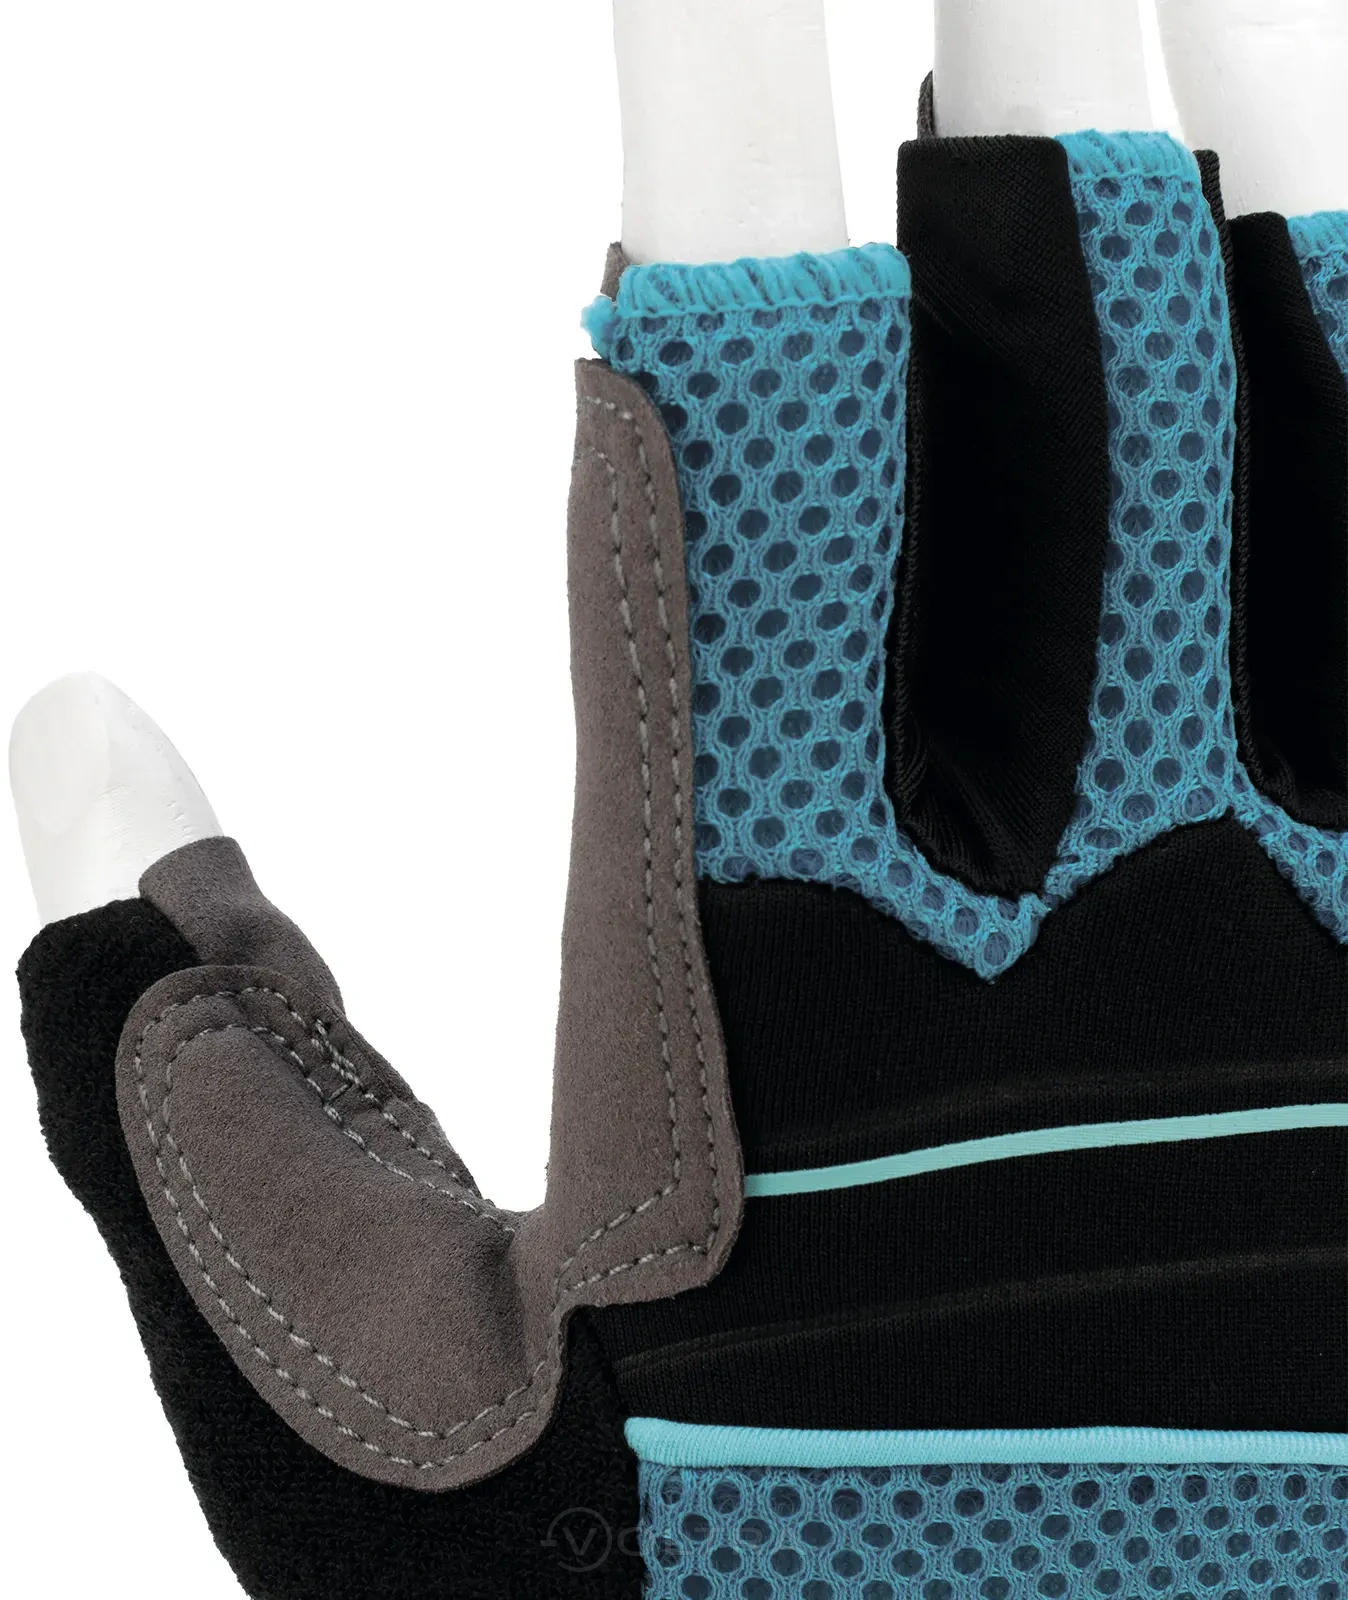 Перчатки комбинированные облегченные открытые пальцы AKTIV размер М (8) Gross (90308)